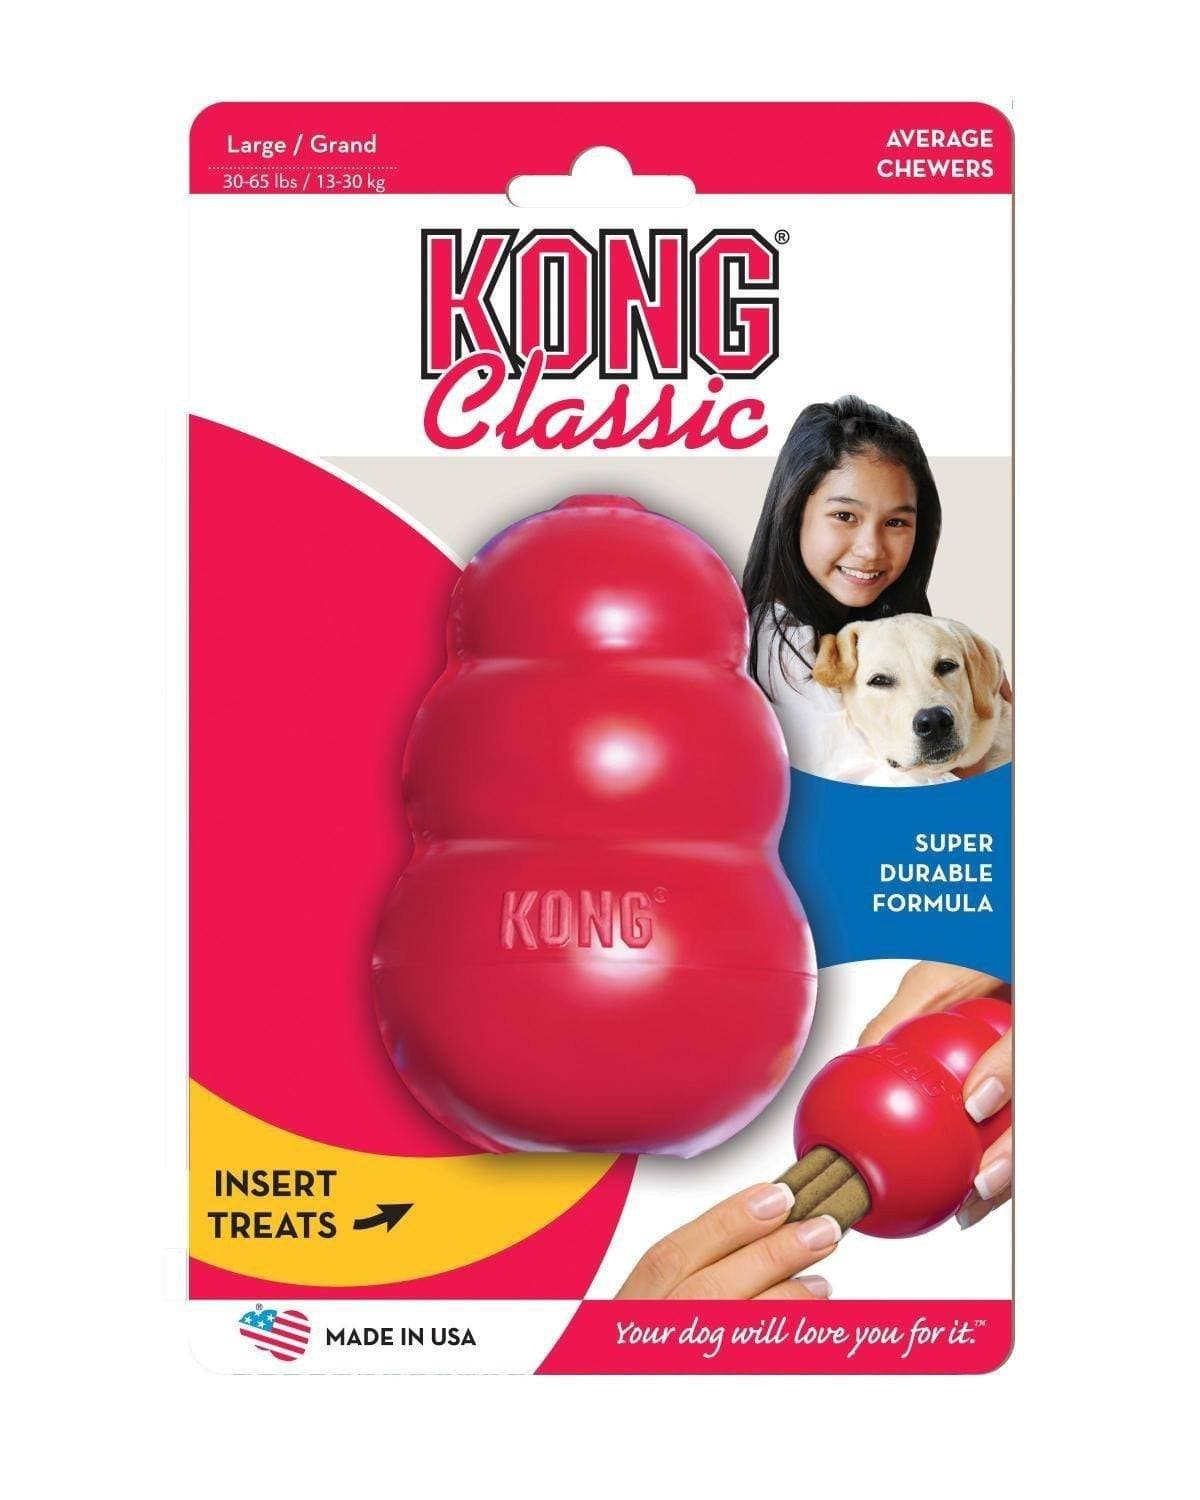 Juega y Entretiene a tú perro con Kong Classic - Kong Clásico